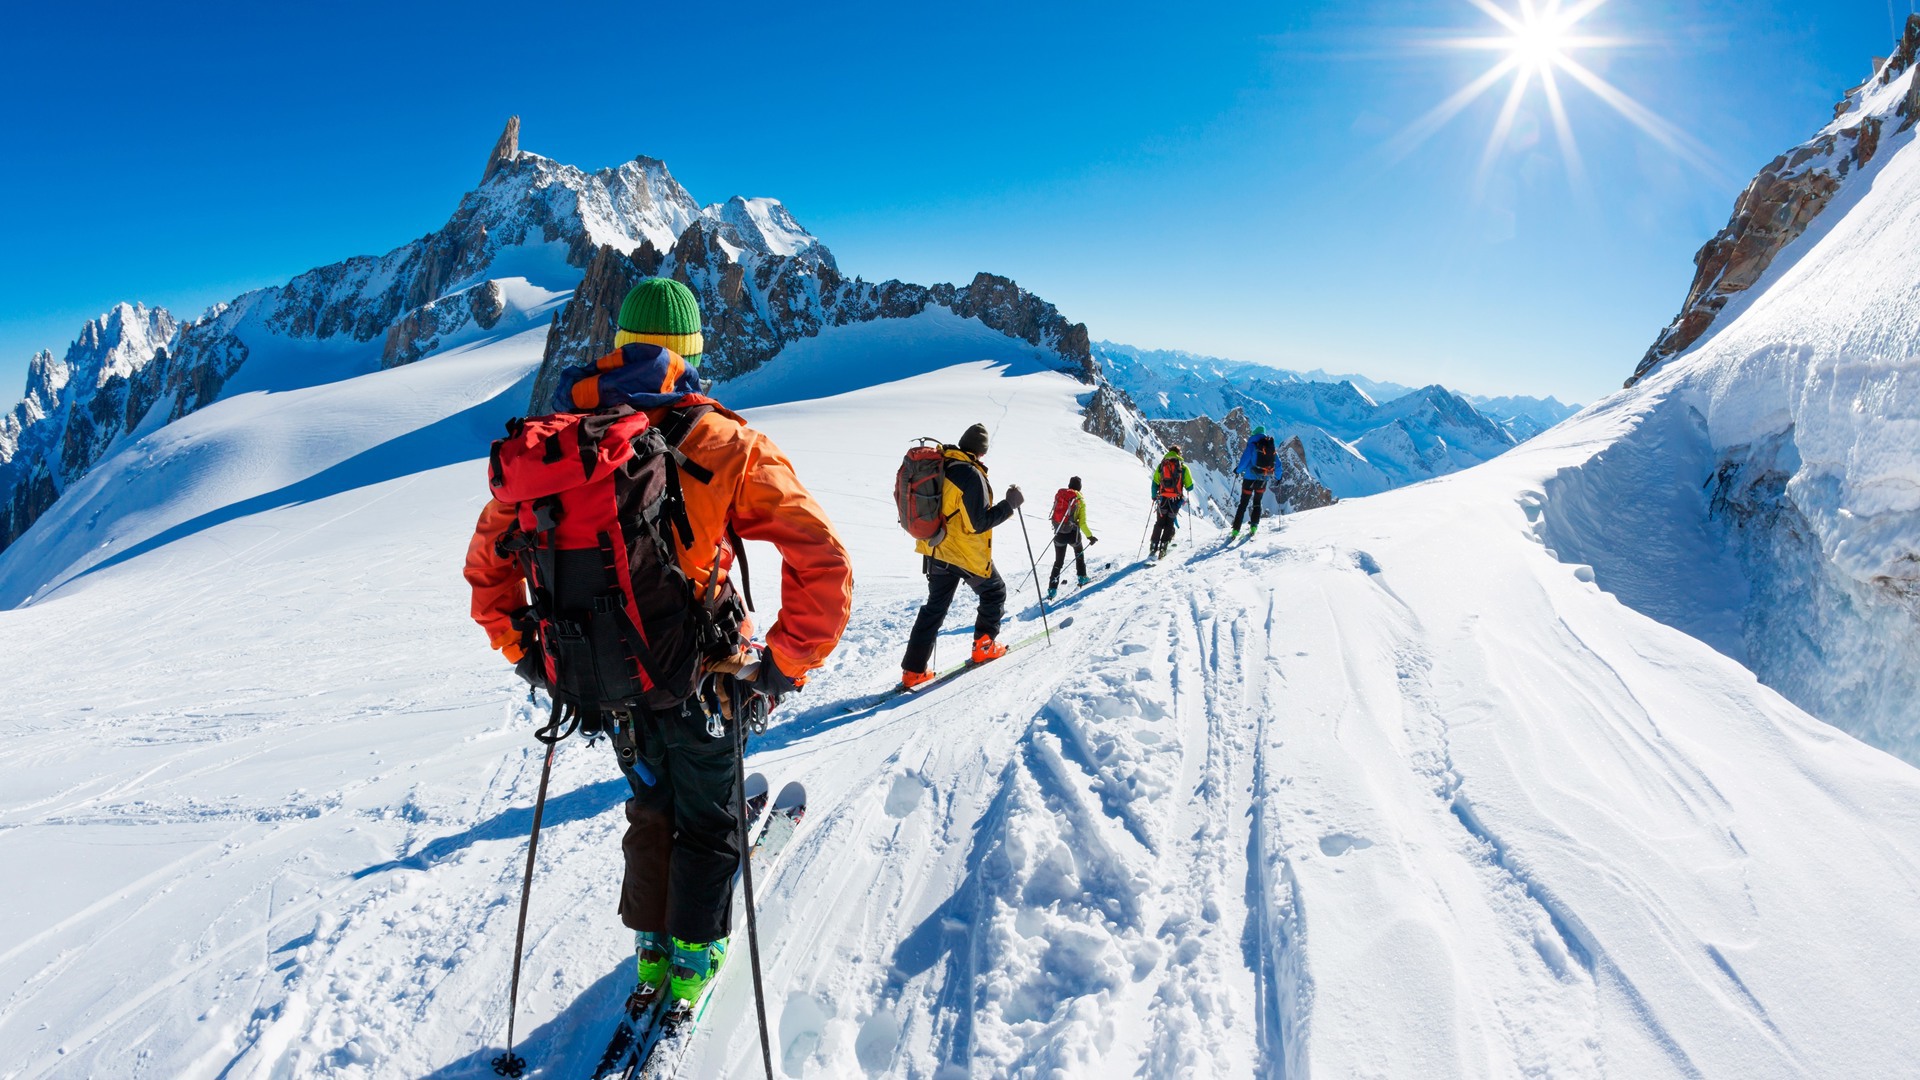 Découvrez encore plus d’activités hivernales dans les Alpes françaises